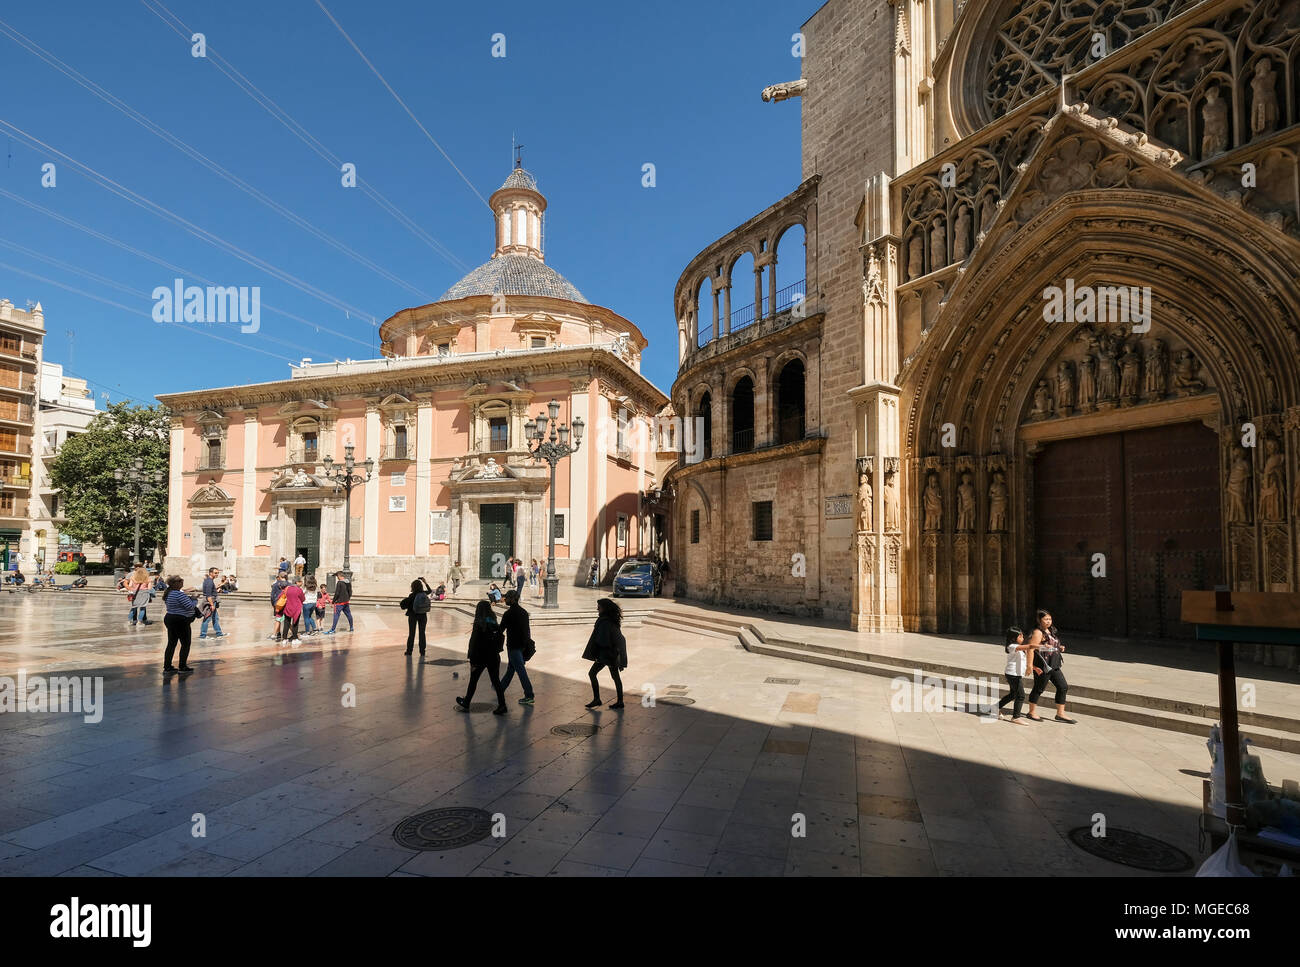 Bâtiments La basilique de los Desamparados (à gauche) et la cathédrale de Valence sur la Plaza de la Virgen, au nord du district de Ciutat Vella, Valencia, Espagne Banque D'Images